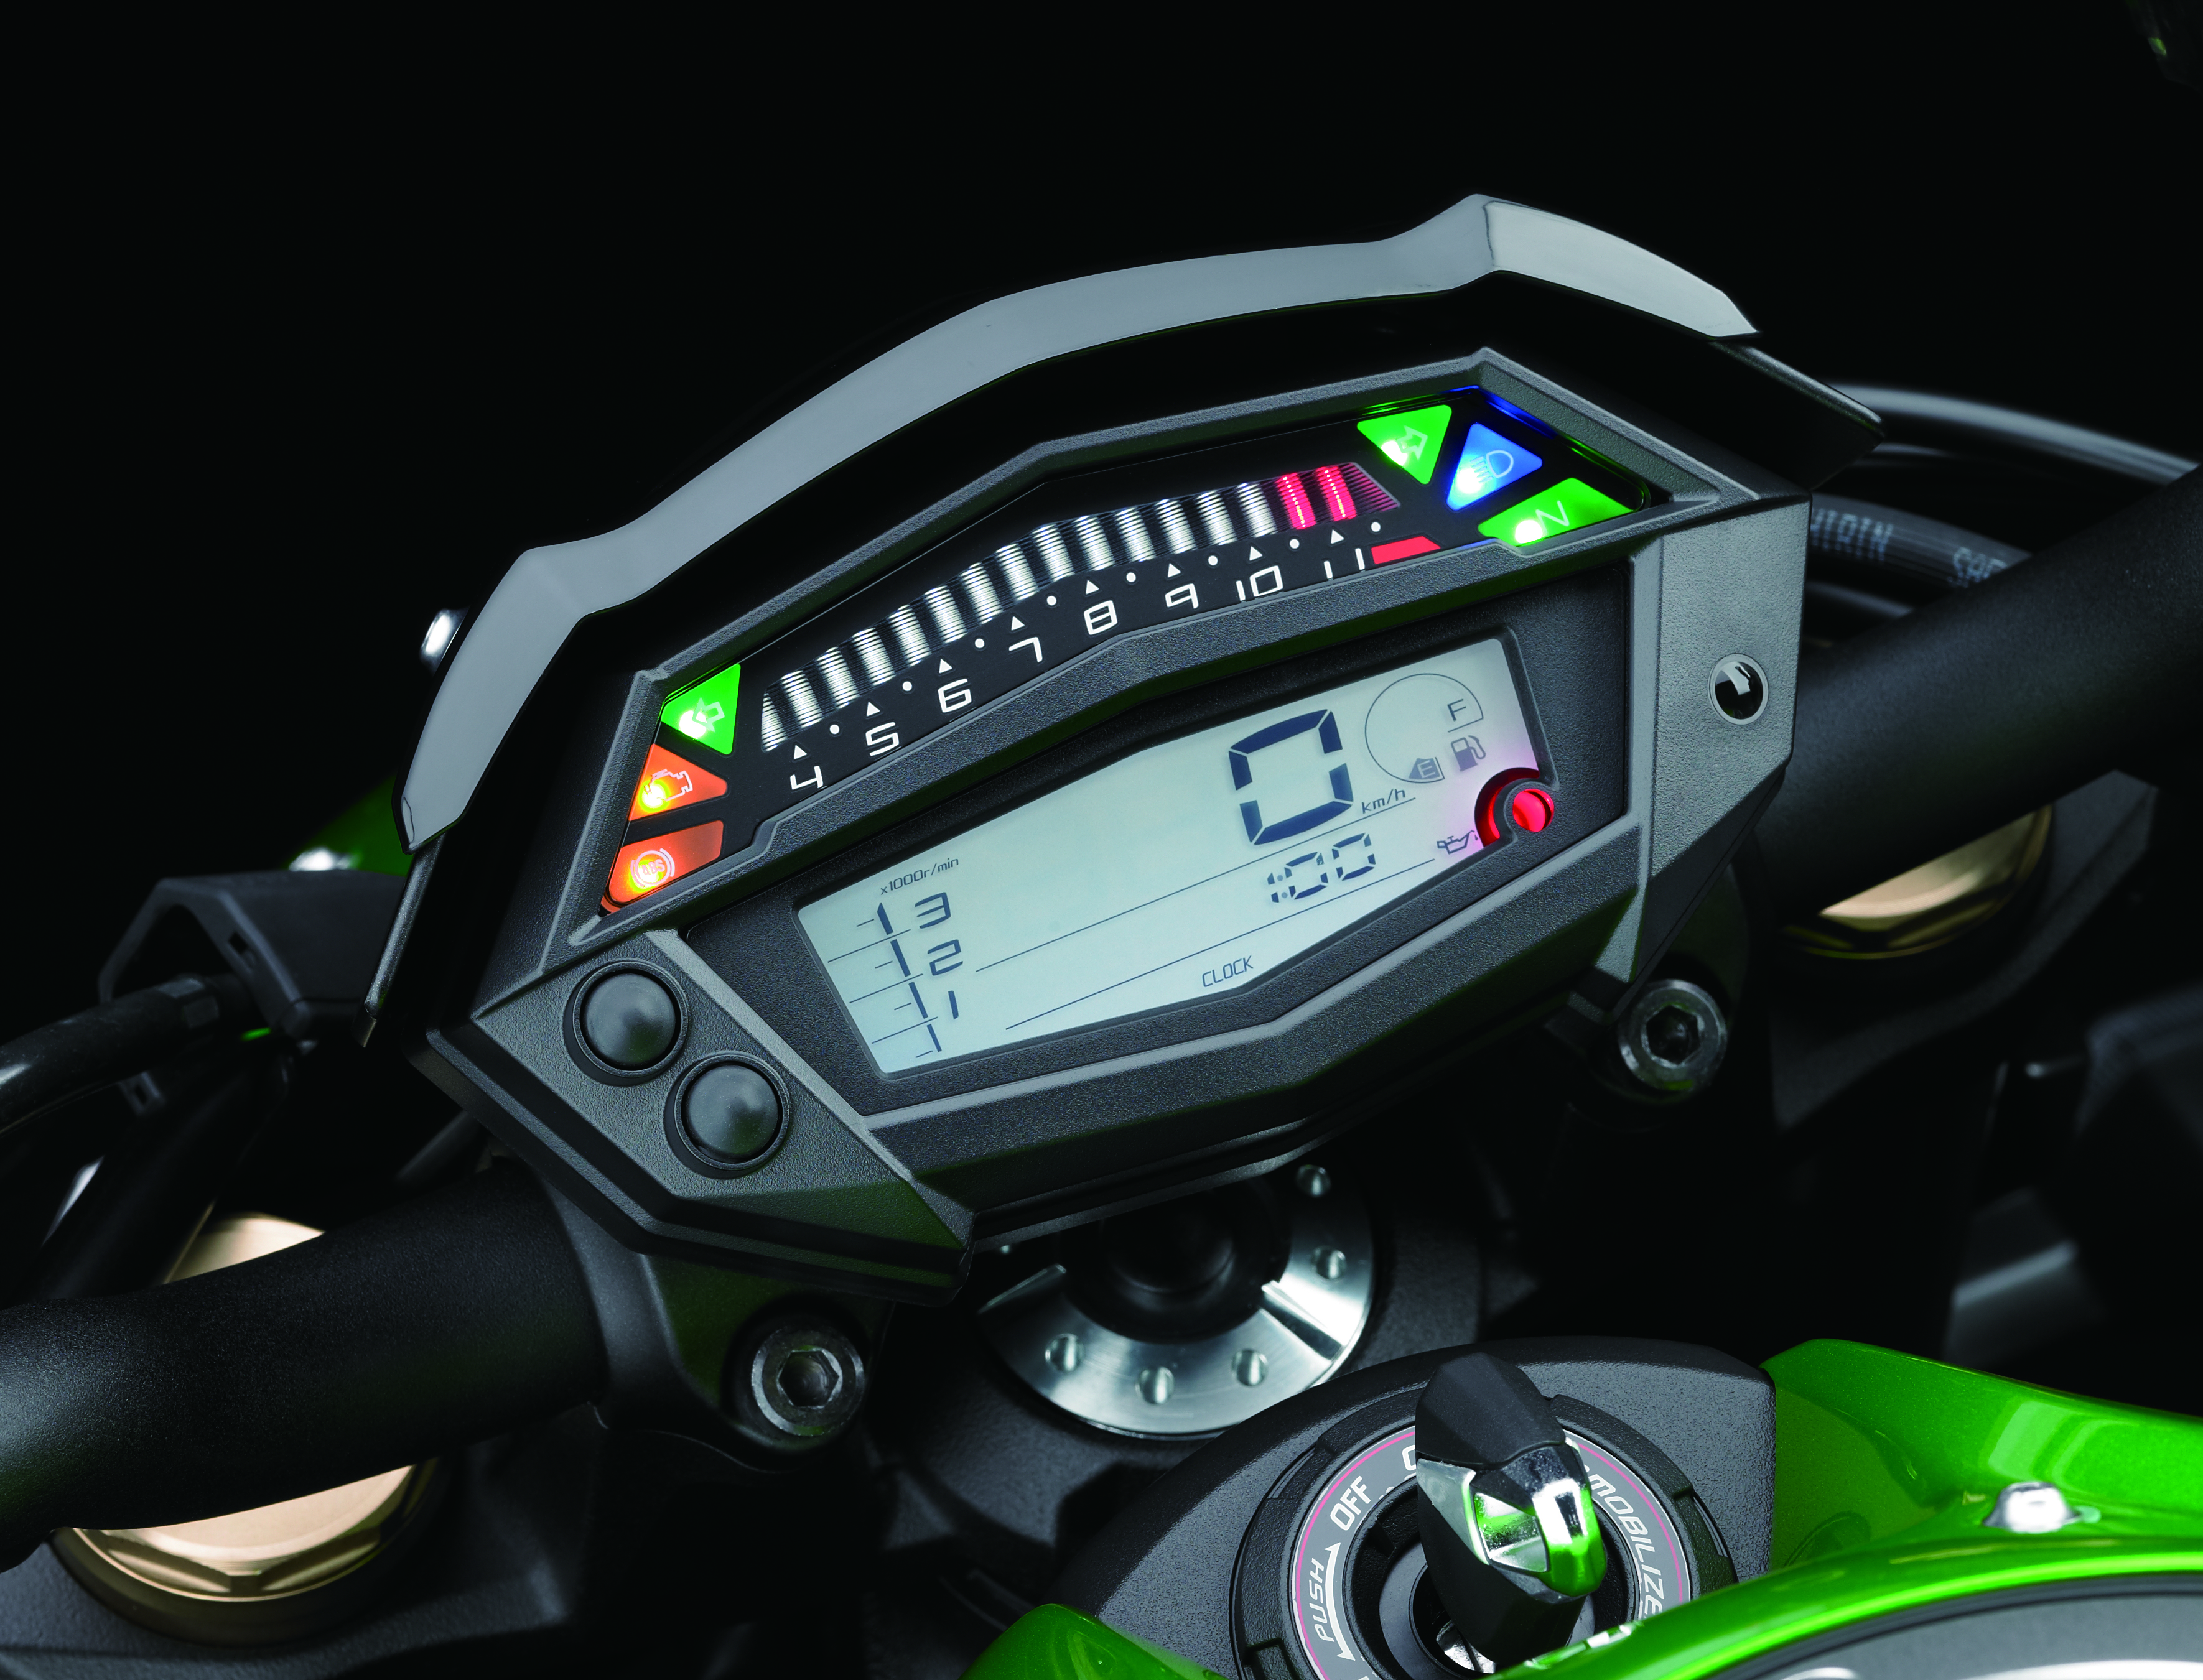 UK ride: 2014 Kawasaki Z1000 review